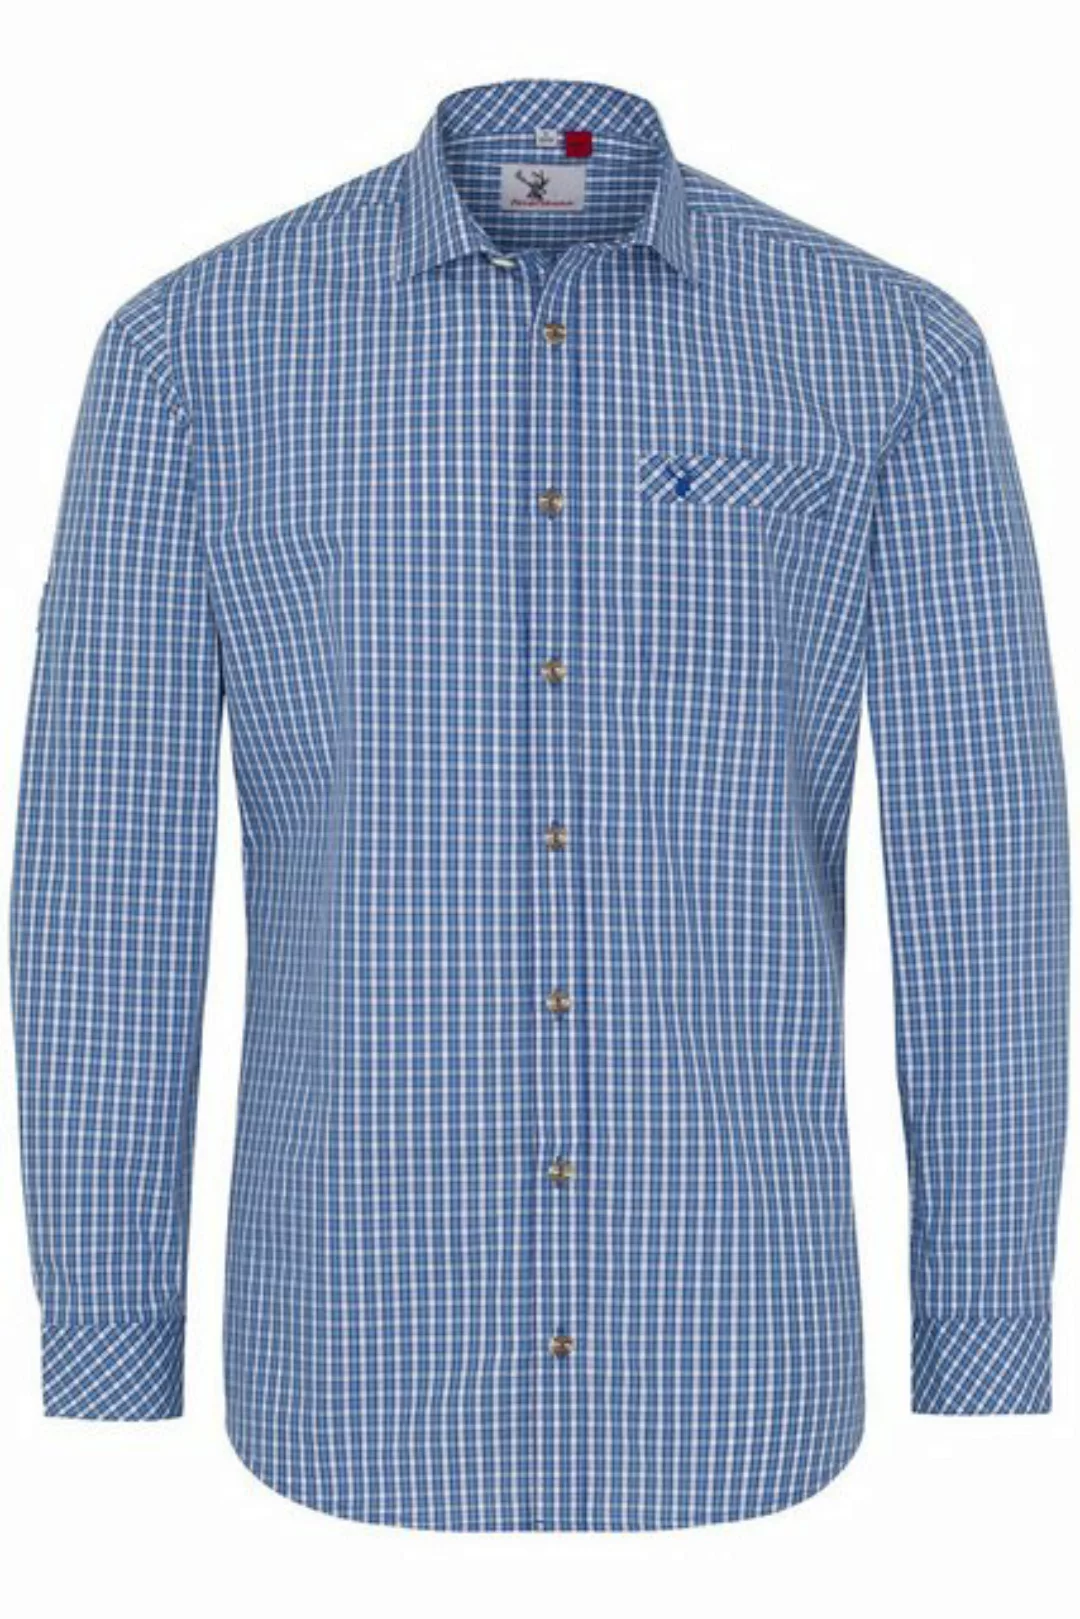 Spieth & Wensky Trachtenhemd Trachtenhemd - NEPTUN LA - blau, grün, rot günstig online kaufen